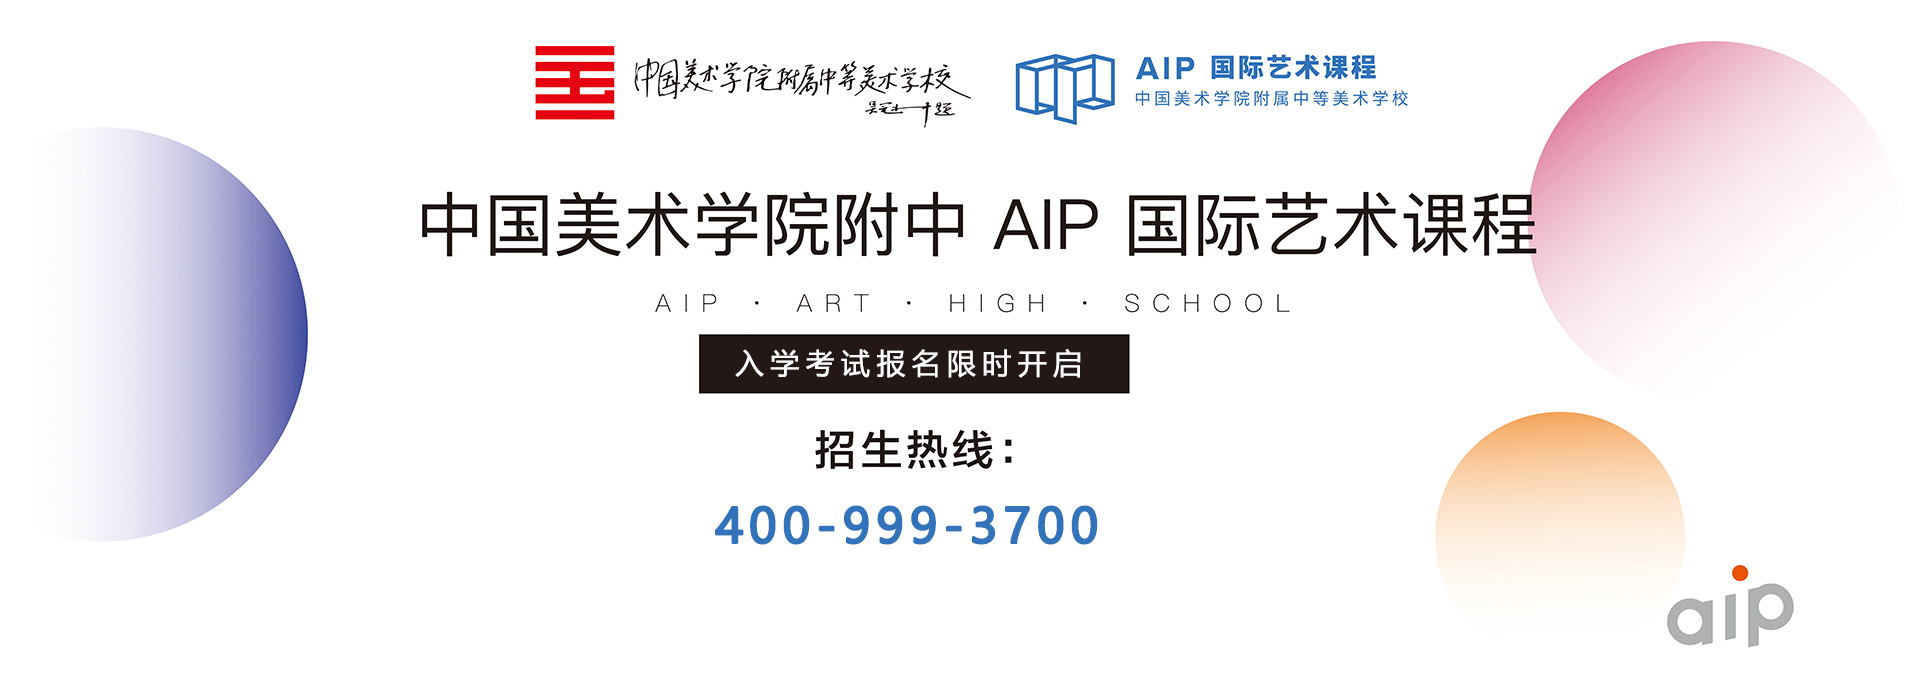 中国美术学院附中aip国际部入学考试开启